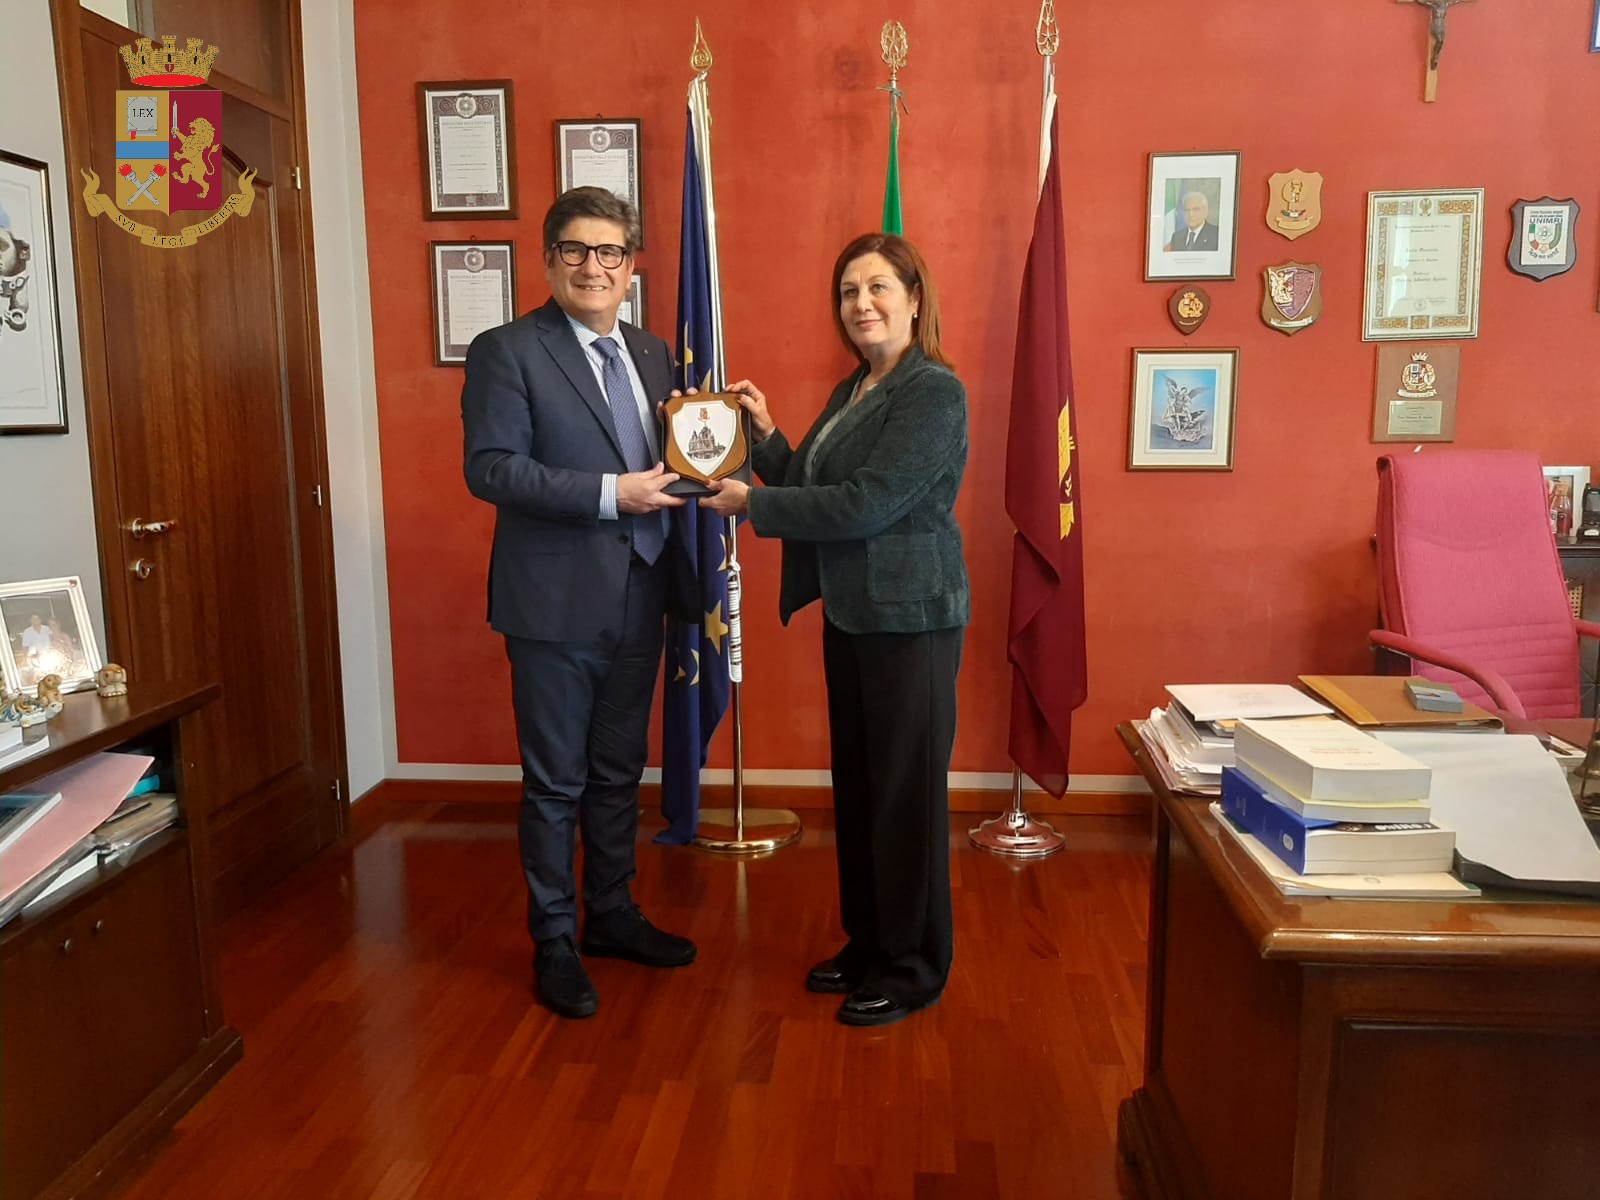 Visita alla Questura di Ragusa del Presidente della Lega Nazionale Dilettanti Sicilia, dott. Sandro Morgana